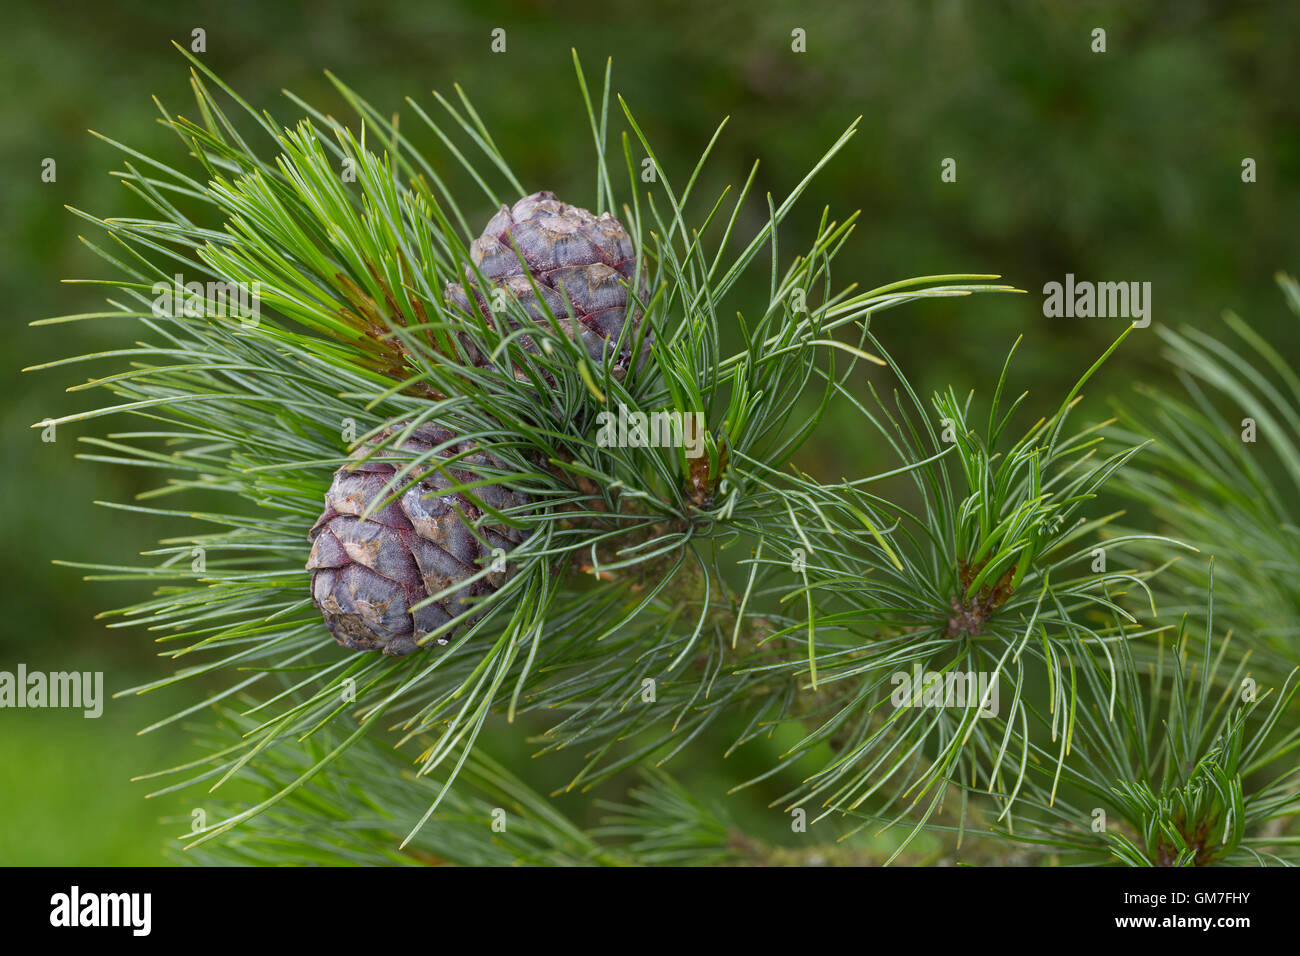 Zirbel-Kiefer, Zirbelkiefer, Zirbel, Arve, Zapfen, Pinus cembra, Arolla Pine, Swiss Stone Pine Stock Photo